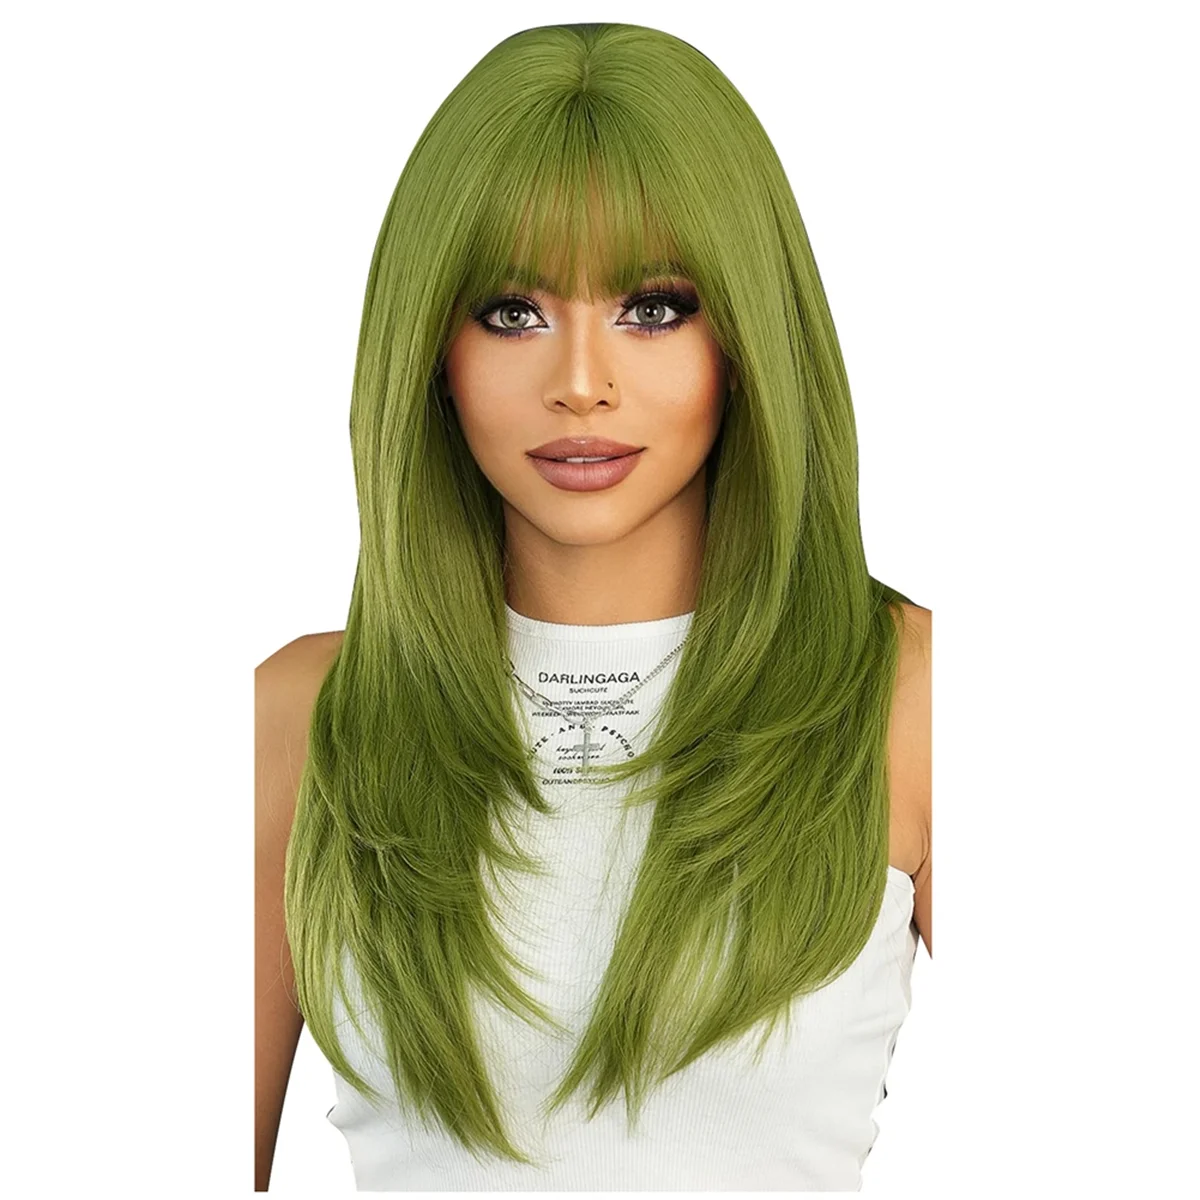 

Парик длинный прямой зеленый синтетический парик с челкой многослойный прямой средней длины с защитой от сердец женский разноцветный парик (24 дюйма)